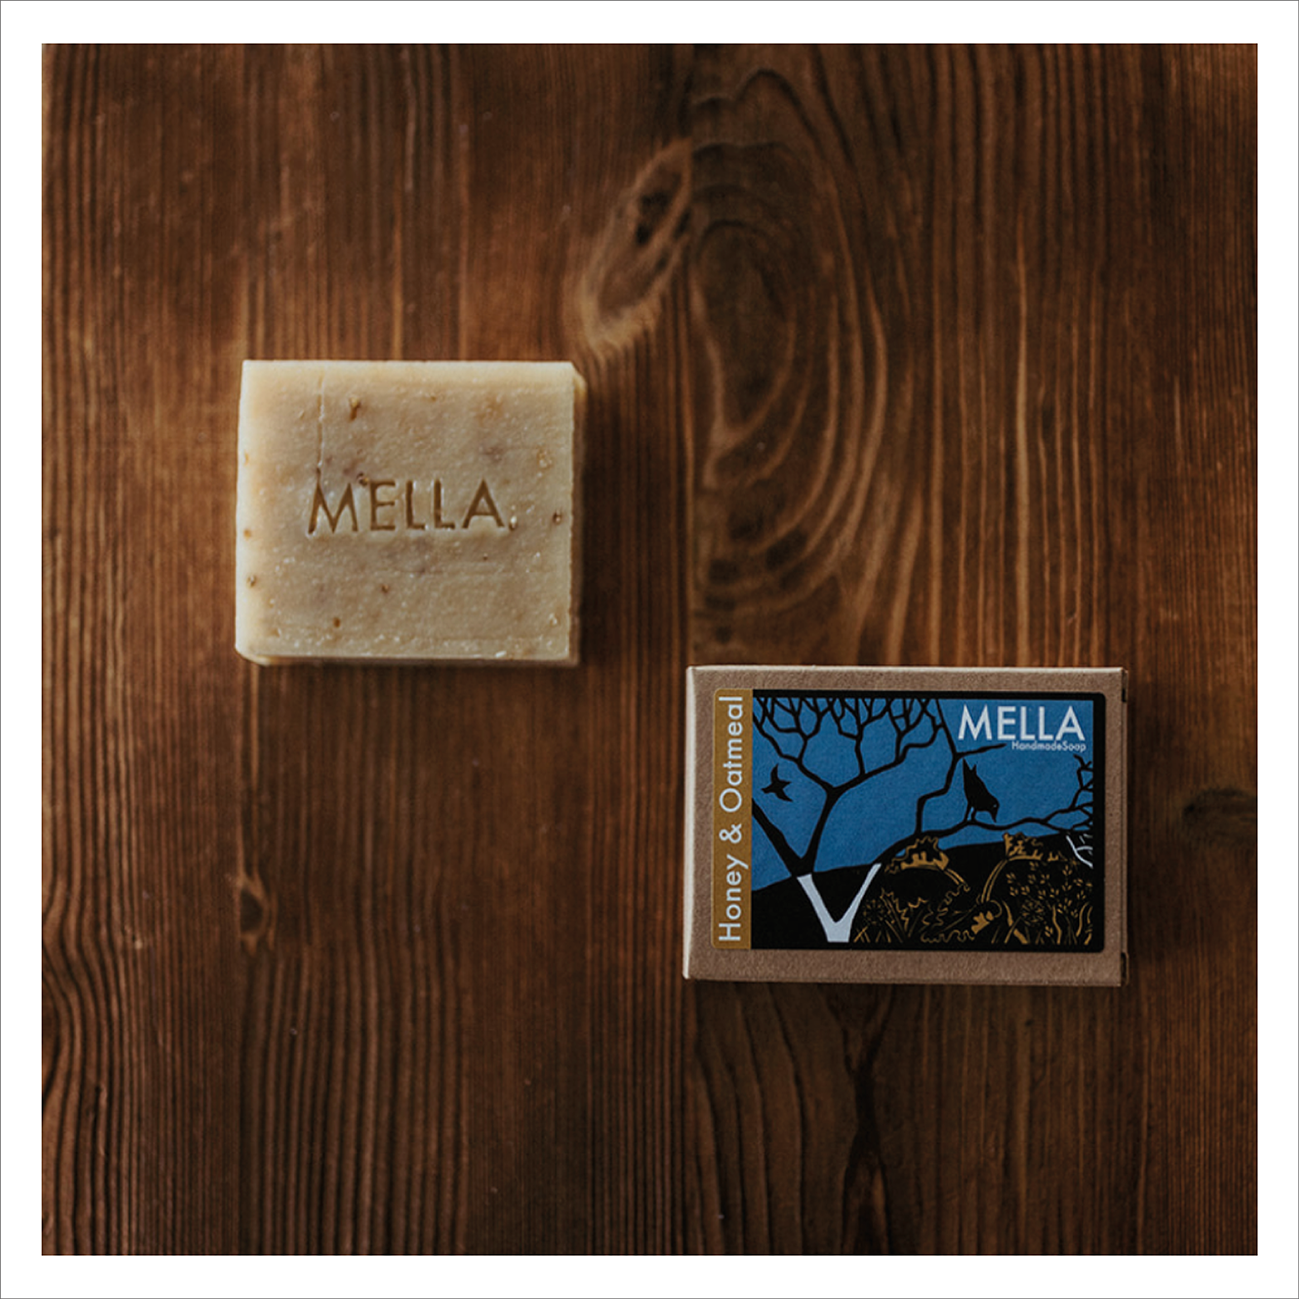 Mella Soap - Honey & Oatmeal